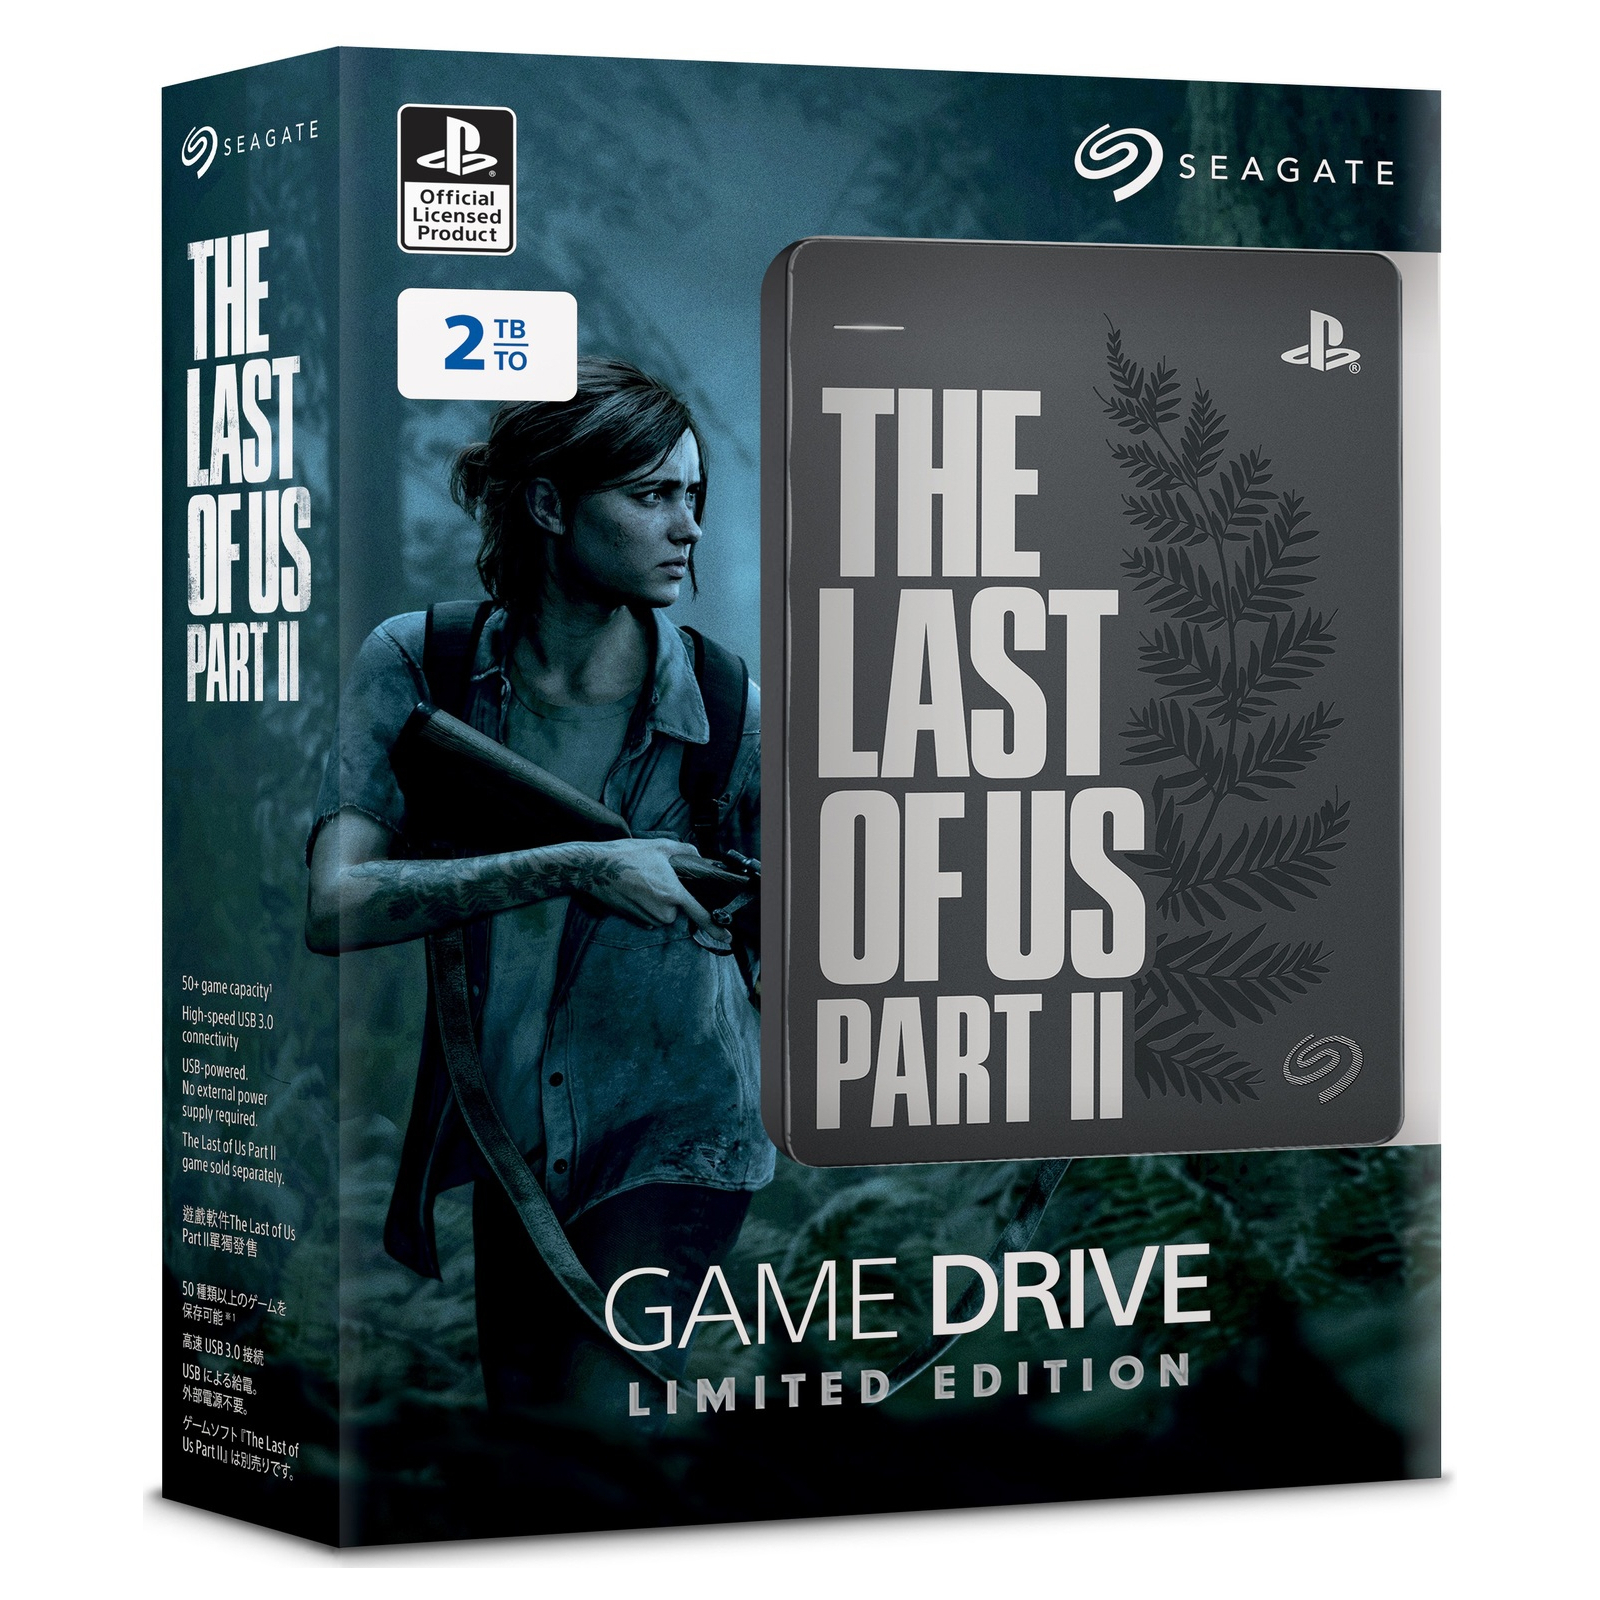 Зовнішній жорсткий диск 2.5" 4TB Game Drive for PlayStation Seagate (STLL4000200) зображення 6